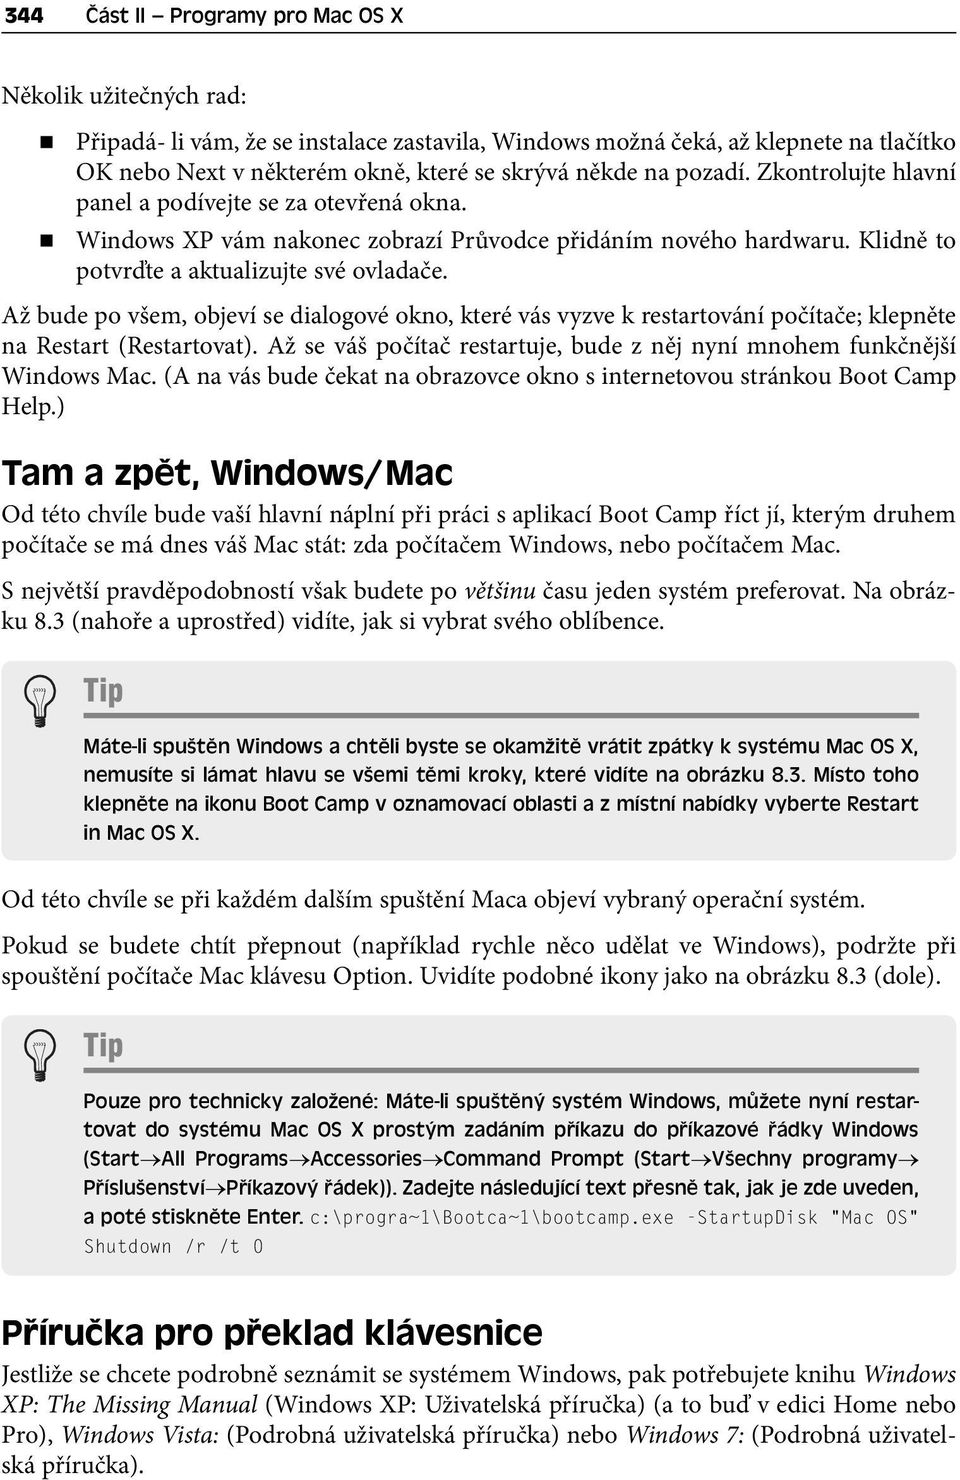 Až bude po všem, objeví se dialogové okno, které vás vyzve k restartování počítače; klepněte na Restart (Restartovat). Až se váš počítač restartuje, bude z něj nyní mnohem funkčnější Windows Mac.